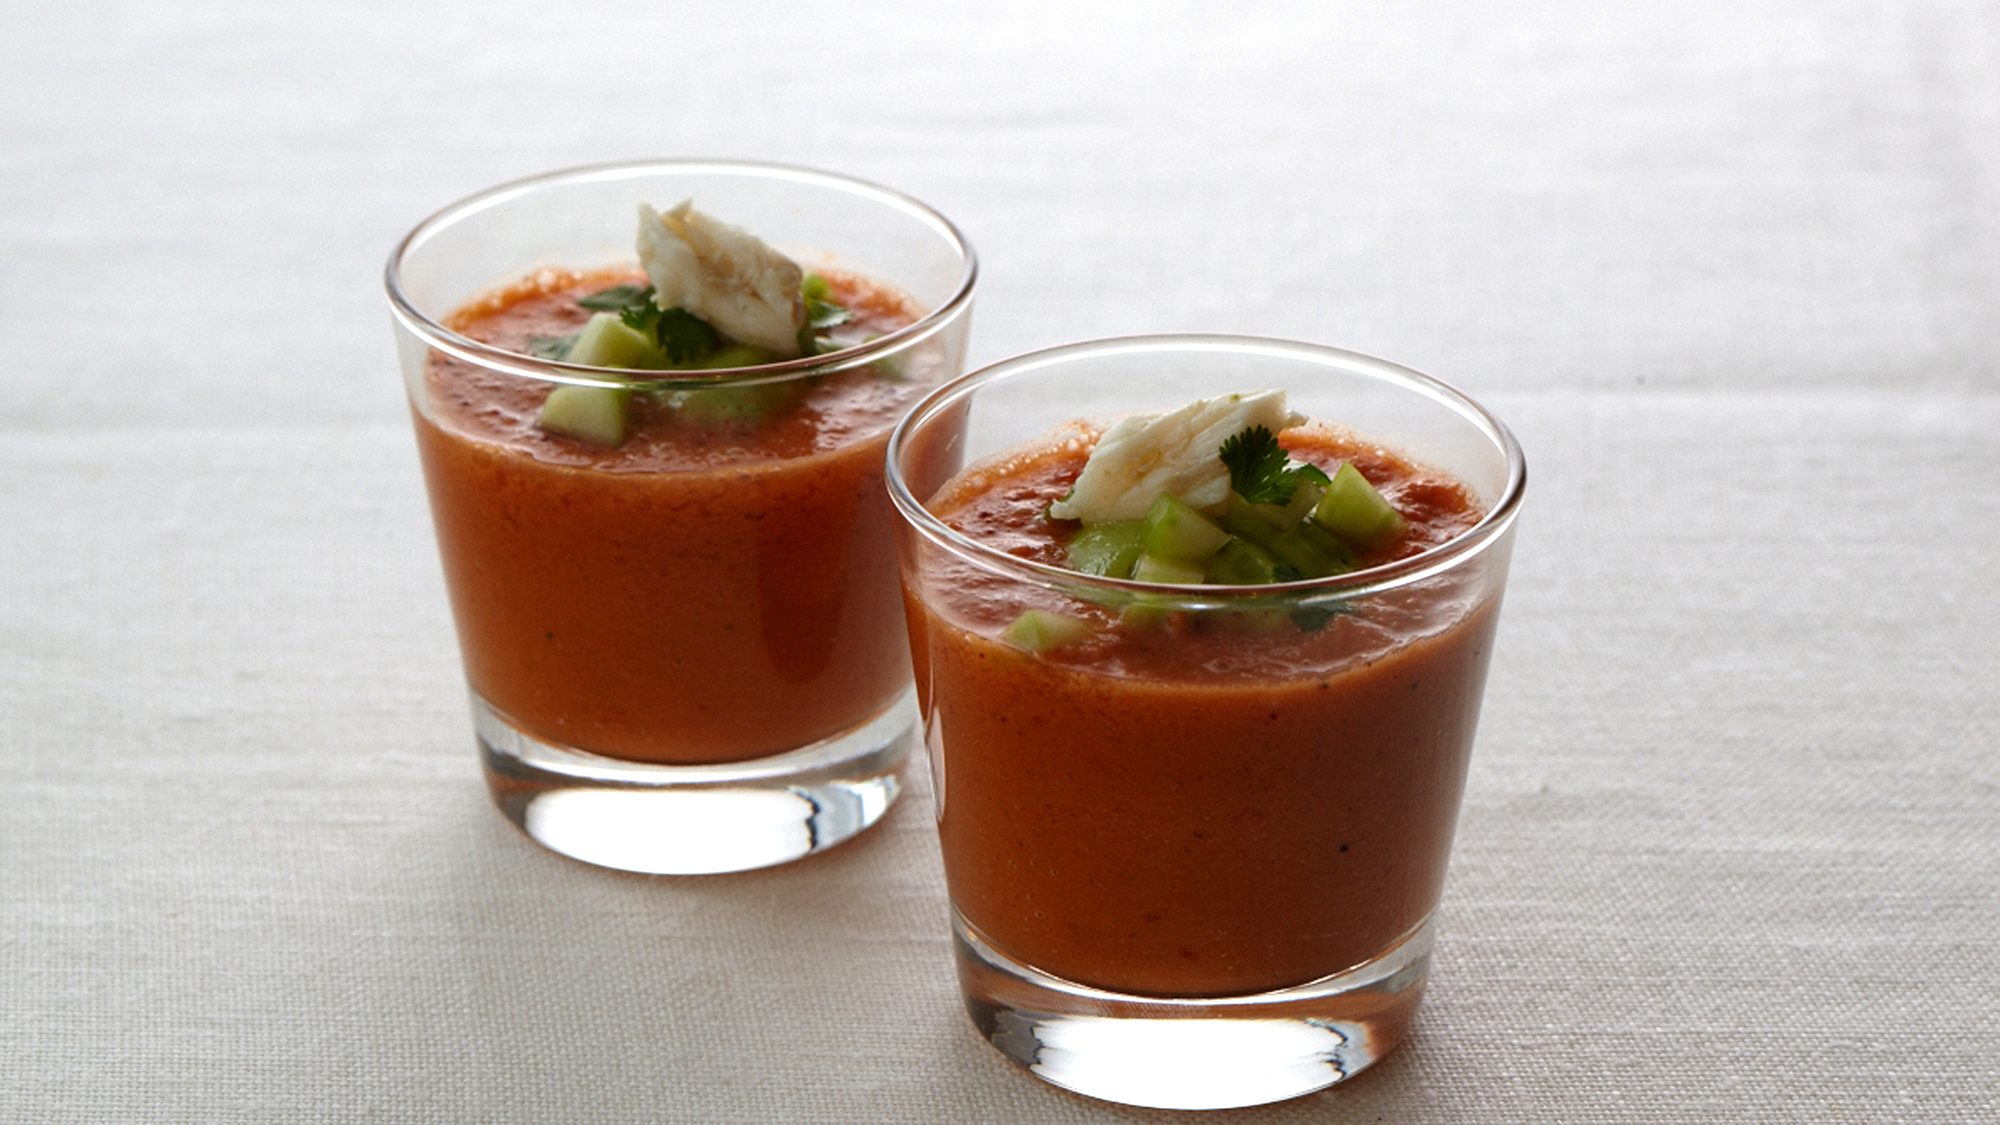 https://images-cdn.welcomesoftware.com/Zz01OWIzM2IyY2U2NmM0Mjk0NDNlMWZmZDdhZmNhODZhZg==/spicy-tomato-gazpacho-soup-with-avocado-puree.jpg